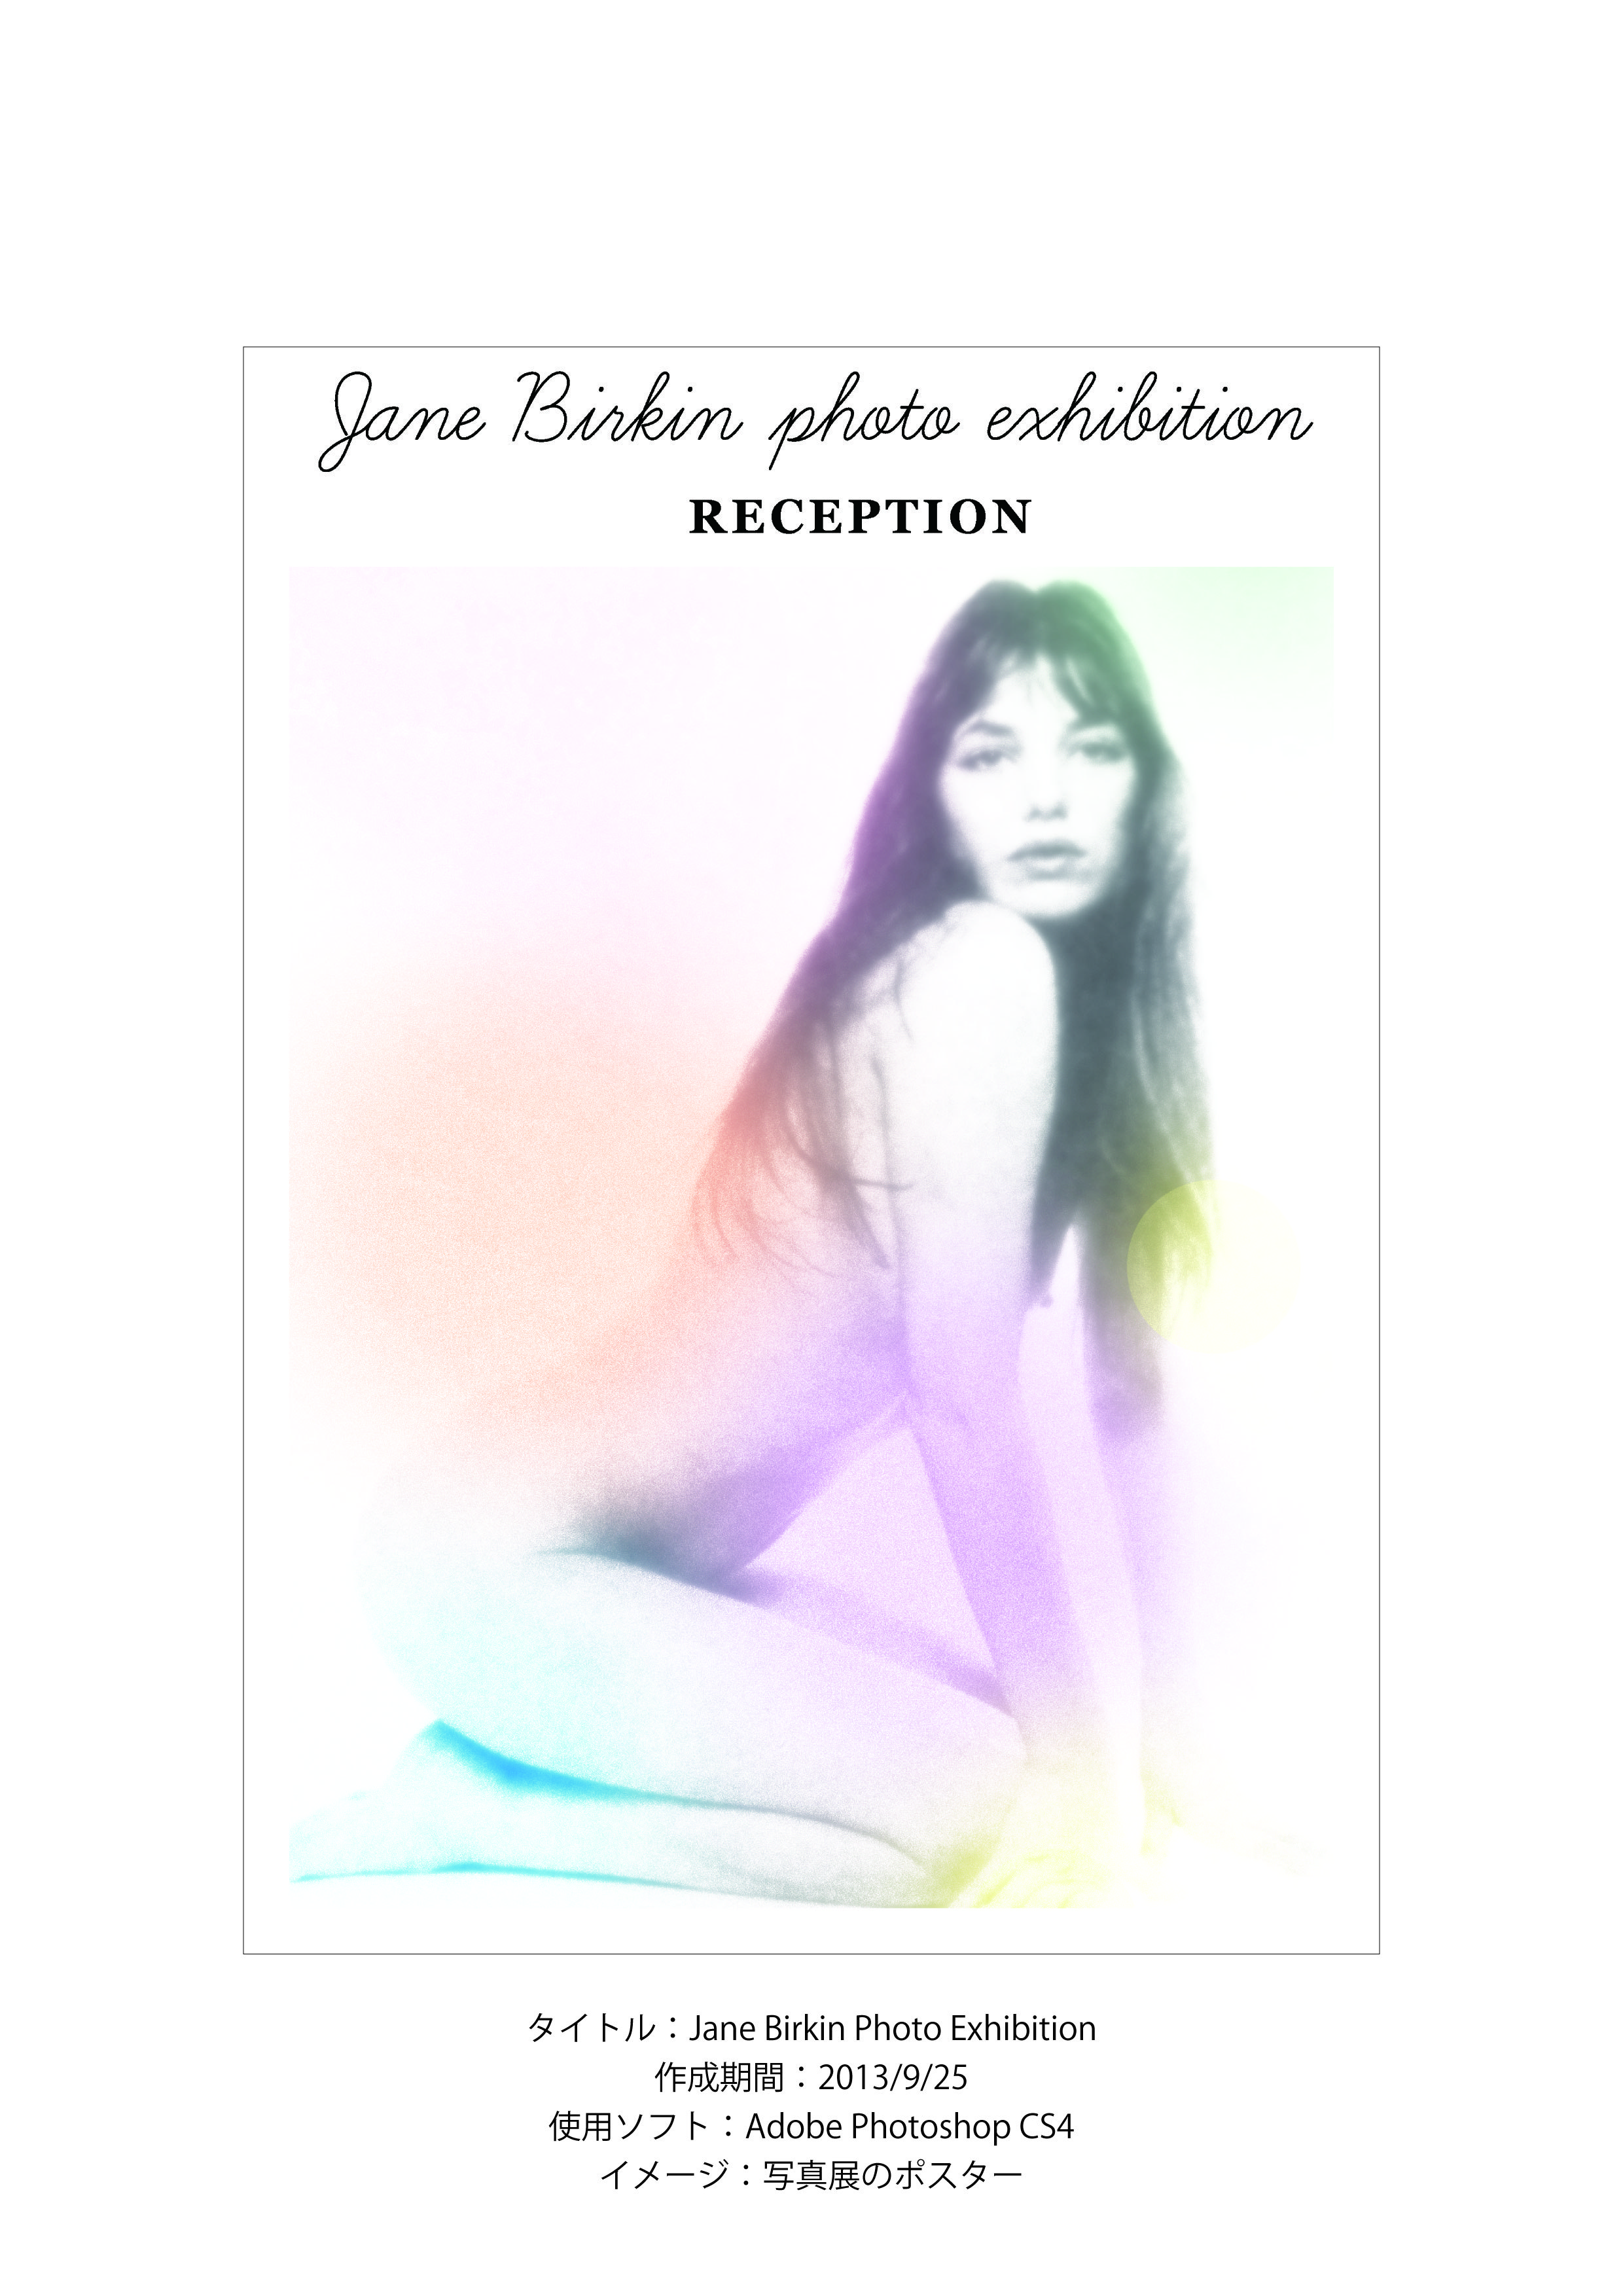 Jane Birkin Photo Exhibition